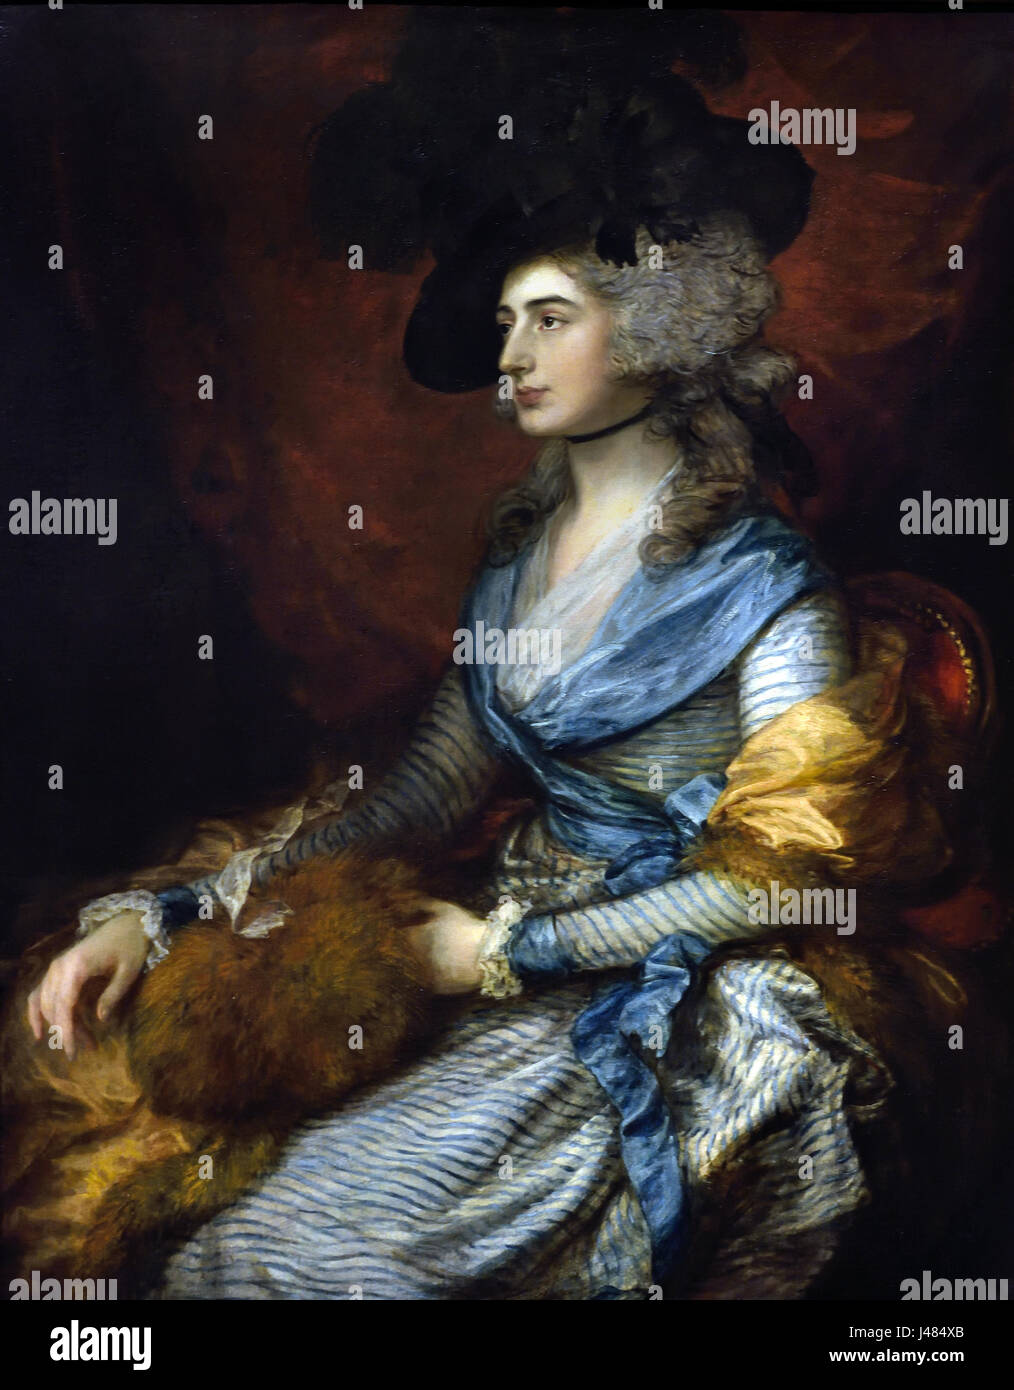 Frau Sarah Siddons 1785 Thomas Gainsborough 1727-1788 UK Vereinigtes Königreich England englische britische Großbritannien (Sarah Siddons war eine walisische Schauspielerin der bekanntesten Tragedienne des 18. Jahrhunderts) Stockfoto